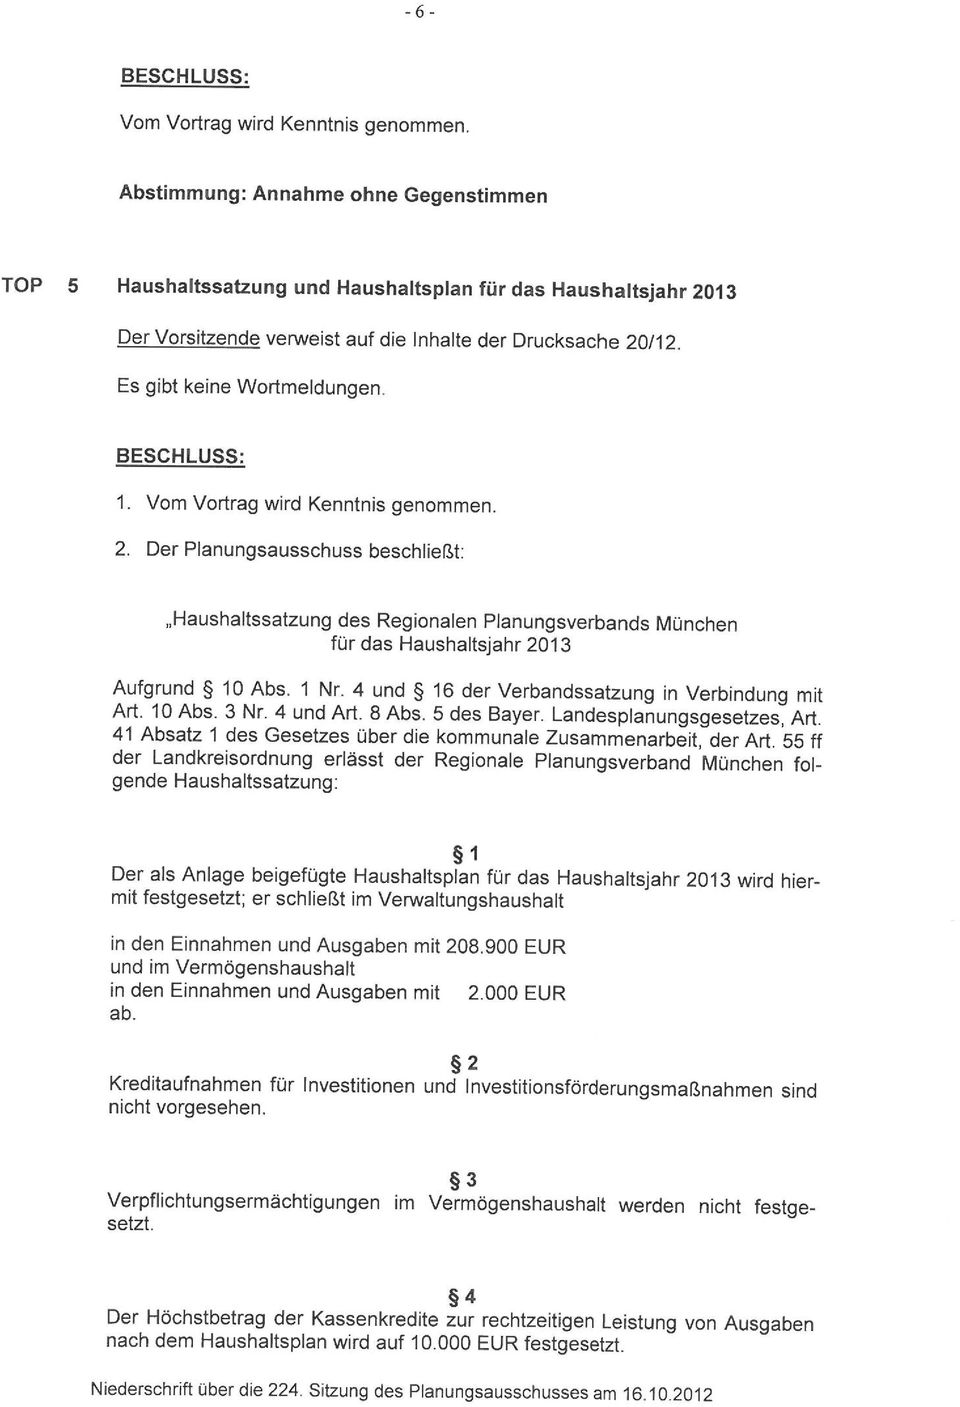 BESCHLUSS: 1. Vom Vortrag wird Kenntnis genommen. 2. Der Planungsausschuss beschließt: "Haushaltssatzung des Regionalen Planungsverbands München für das Haushaltsjahr 2013 Aufgrund 10 Abs. 1 Nr.